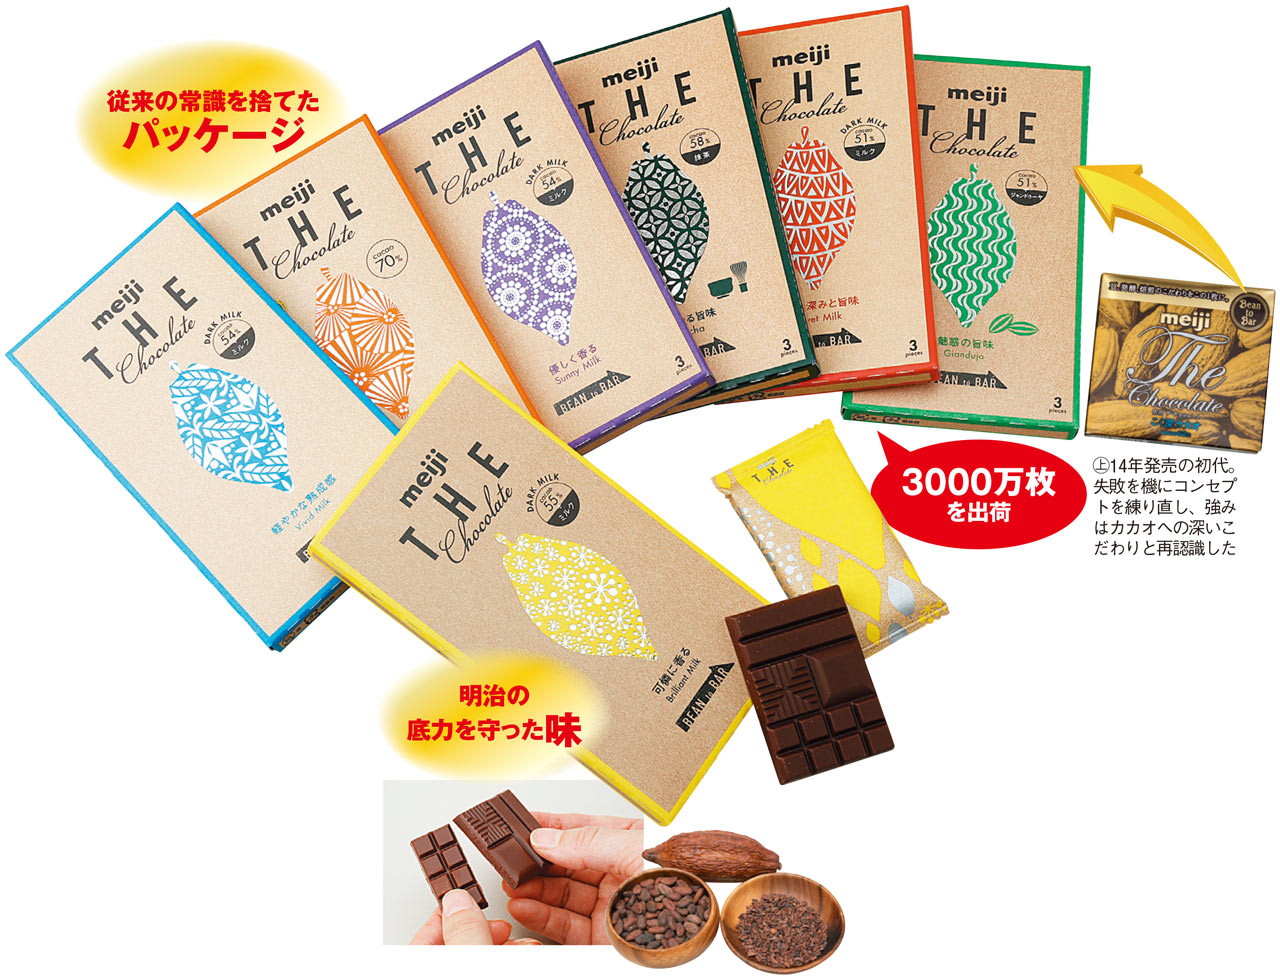 2位 明治 ザ・チョコレート 「チョコレートは明治」の面目躍如：日経